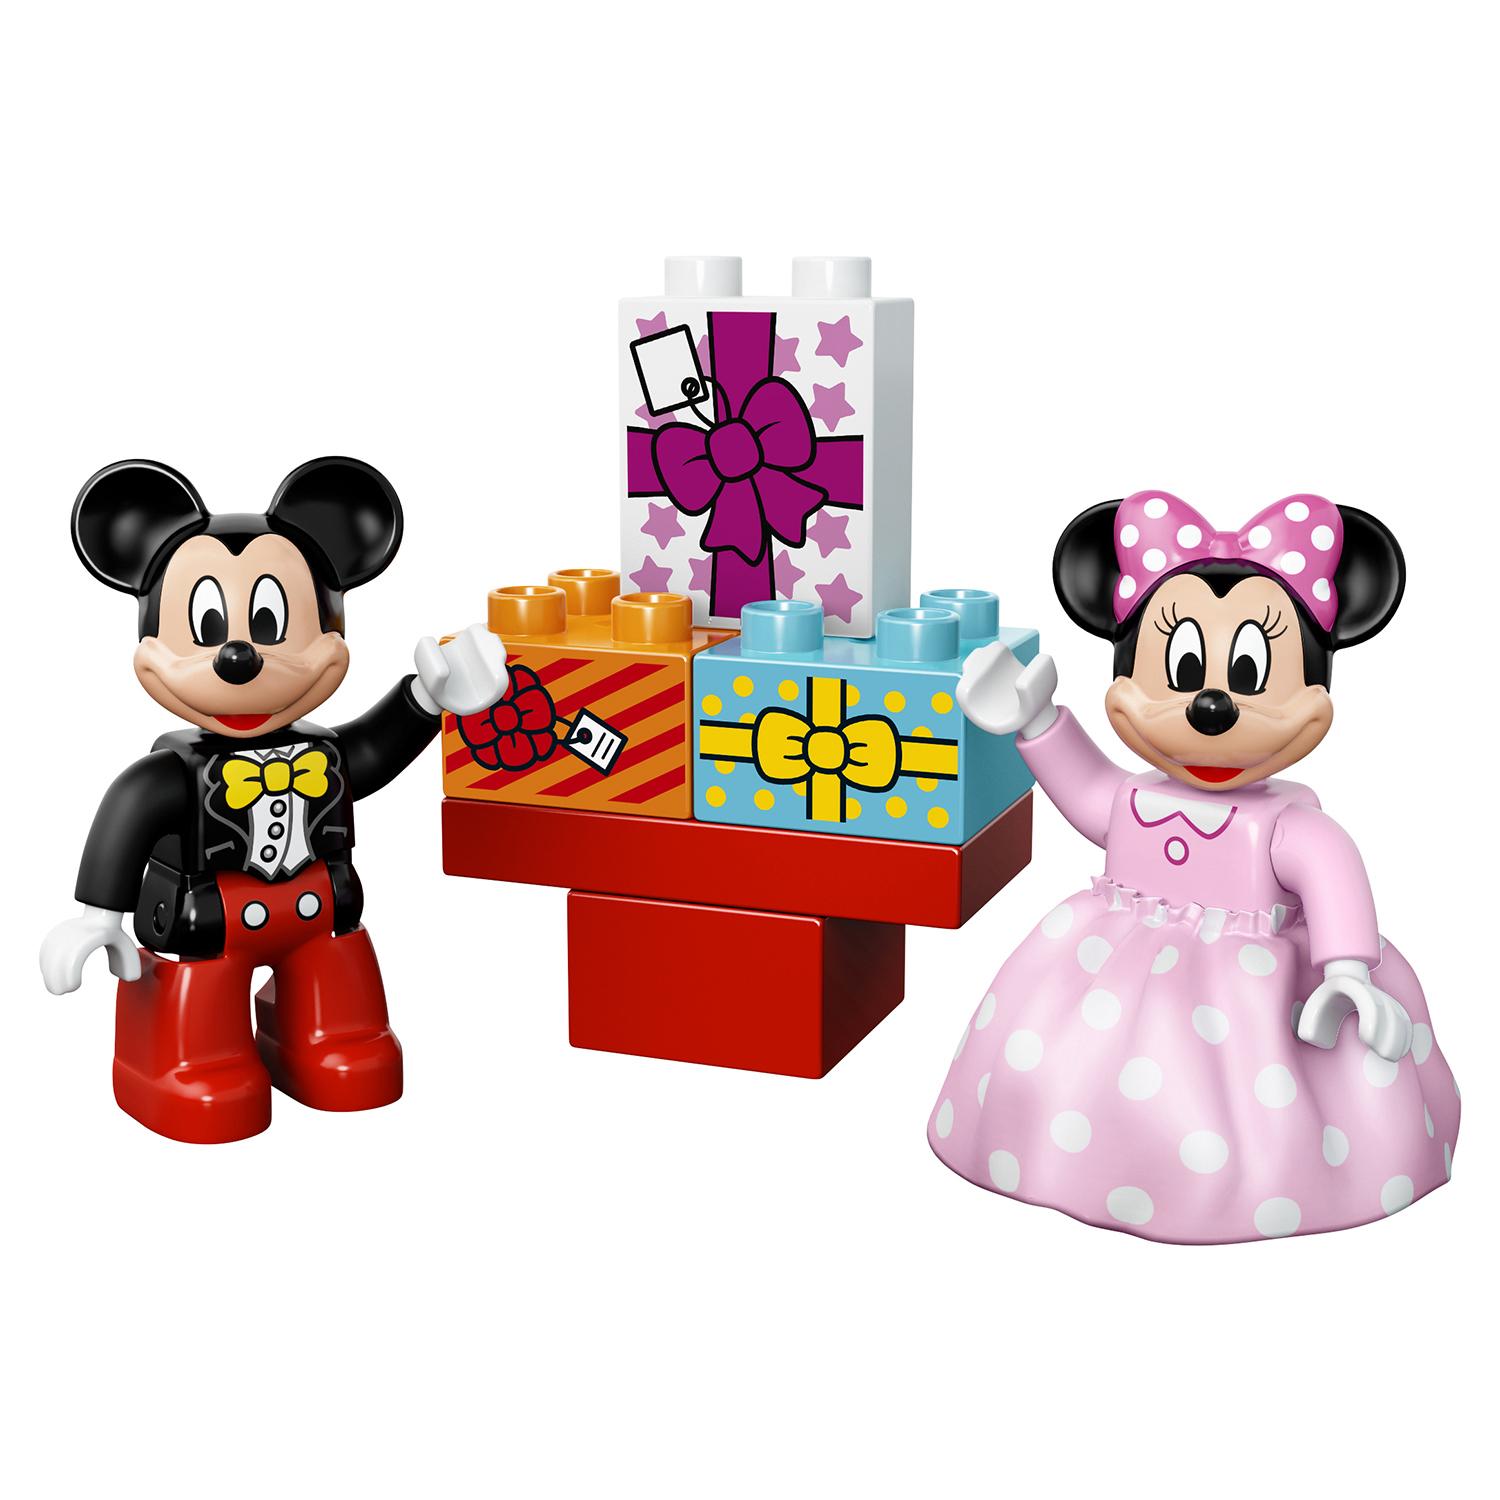 Lego Duplo 10597 День рождения Микки и Минни